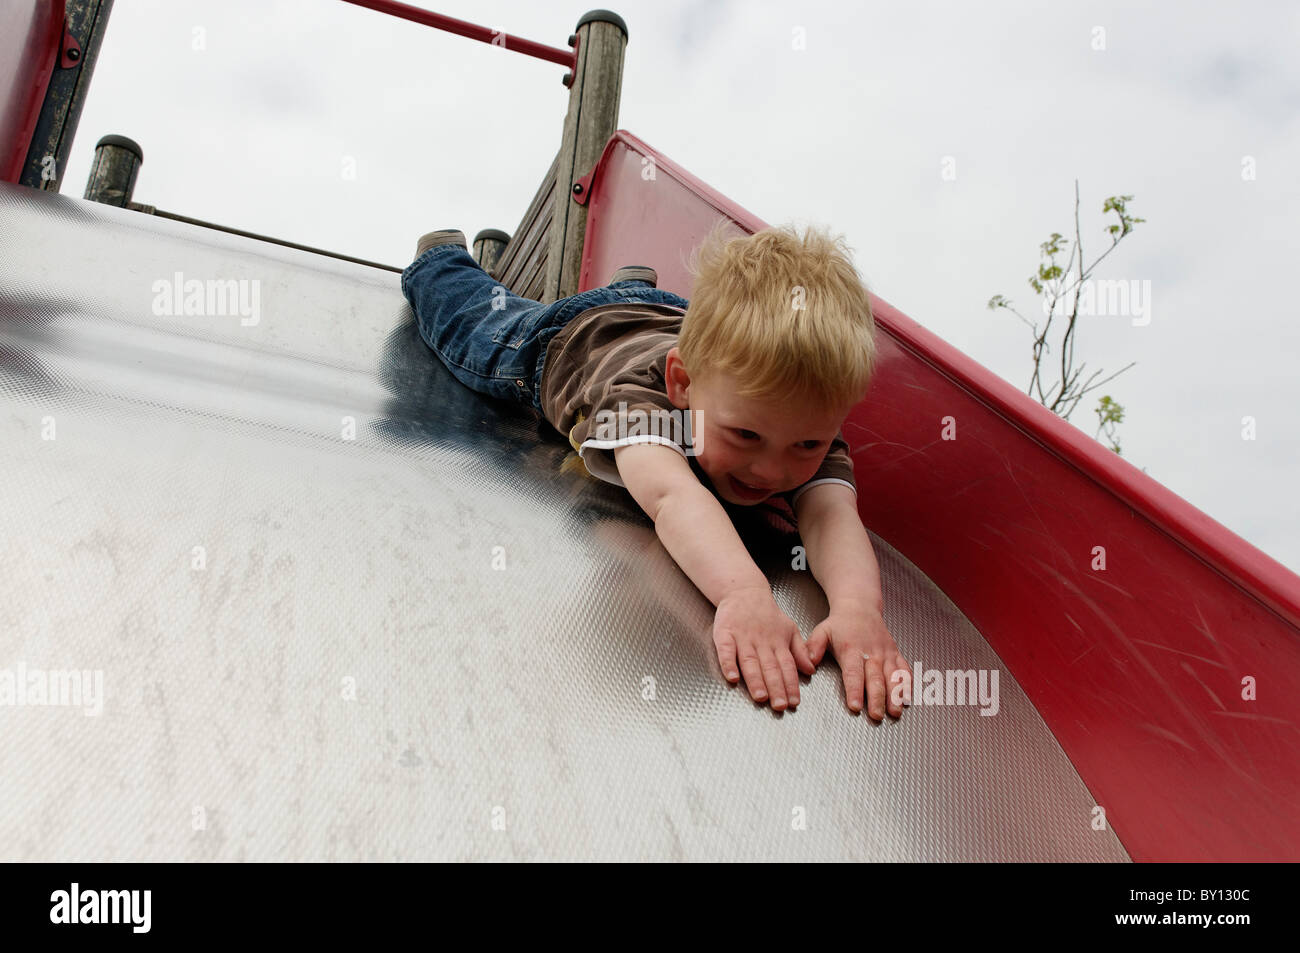 Un jeune garçon faisant glisser tête première sur un parc slide Banque D'Images